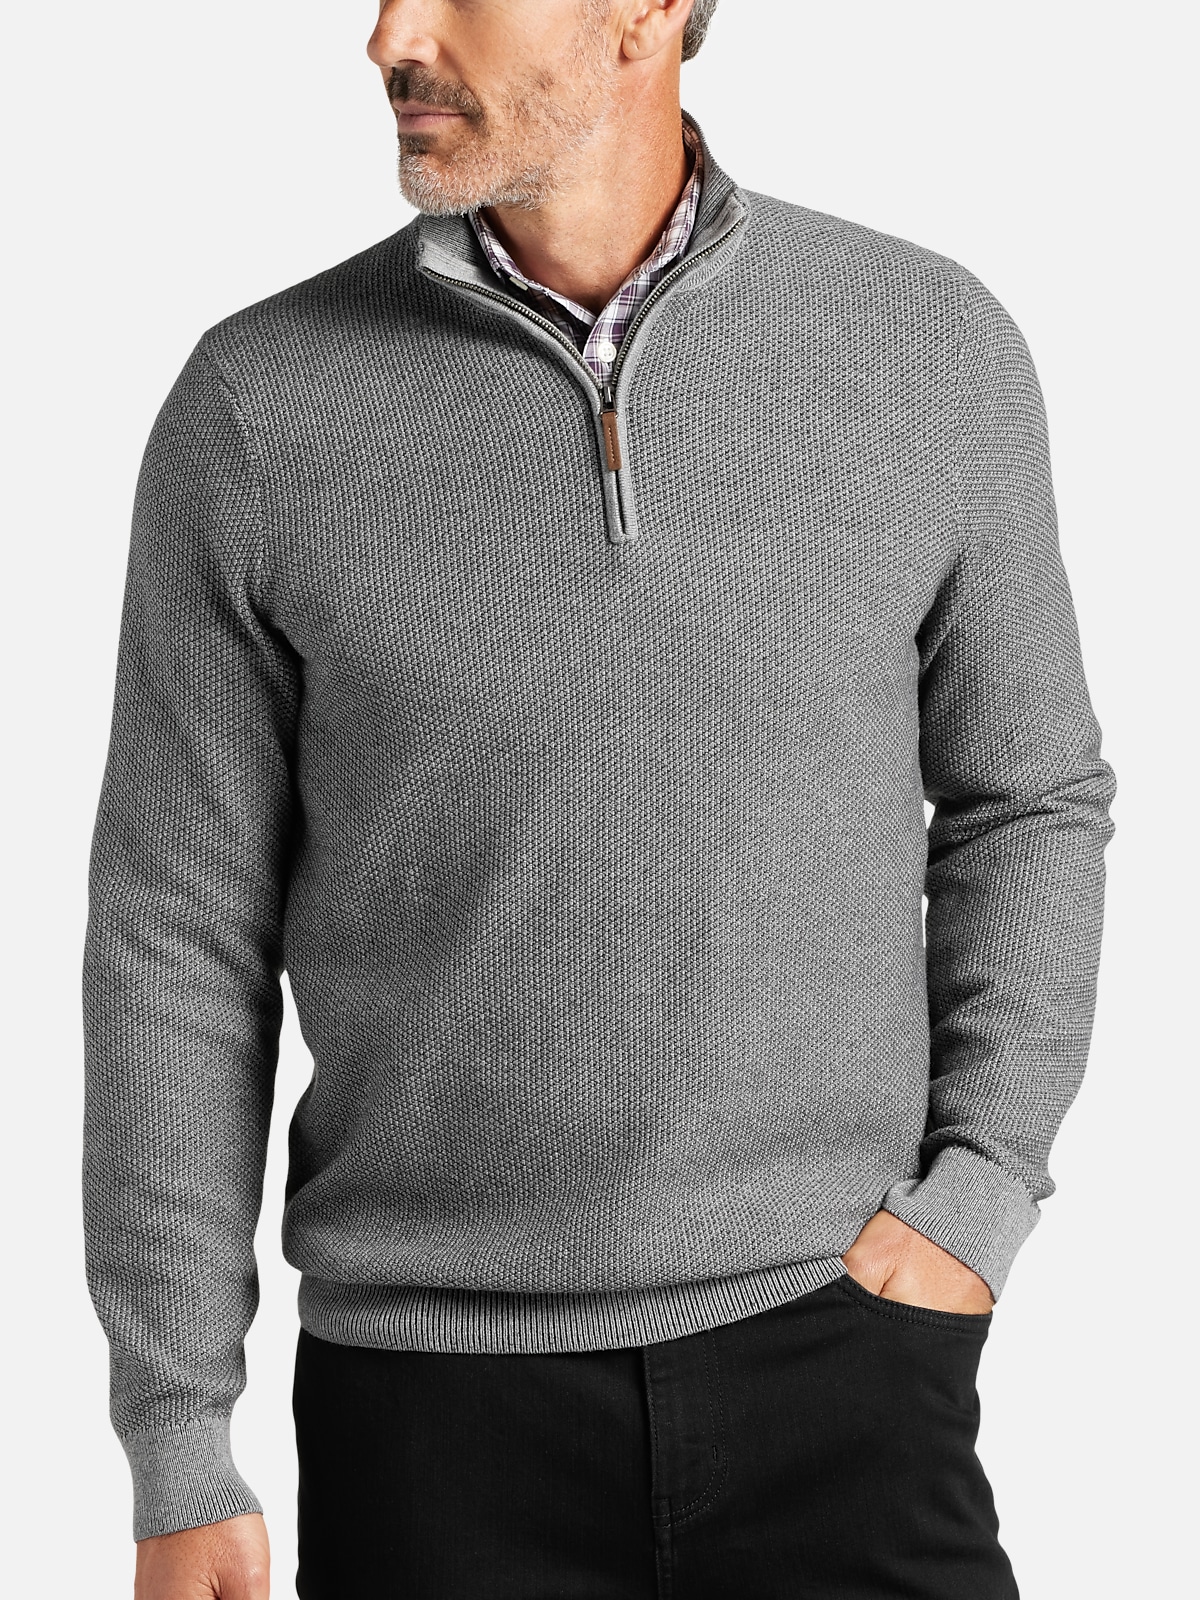 Joseph Abboud Modern Fit 1/4 Zip Sweater | All Sale| Men's Wearhouse